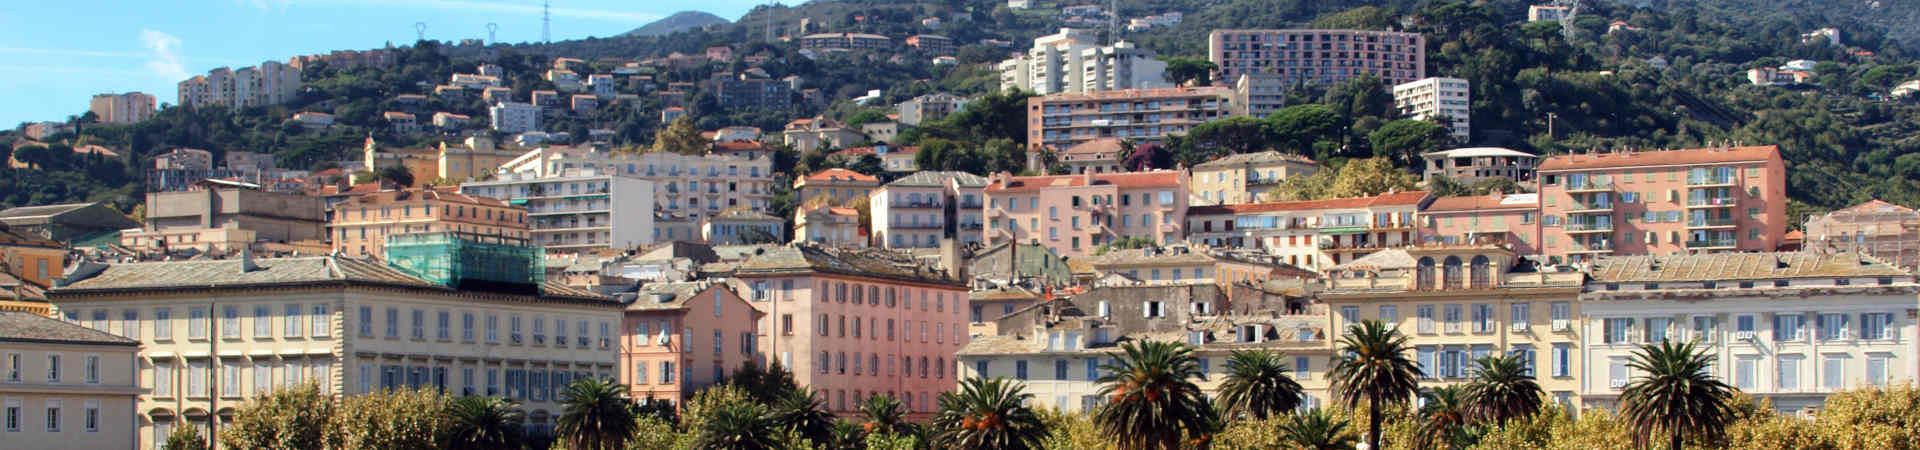 Immagine del porto di arrivo Bastia per la rotta traghetto Livorno - Bastia